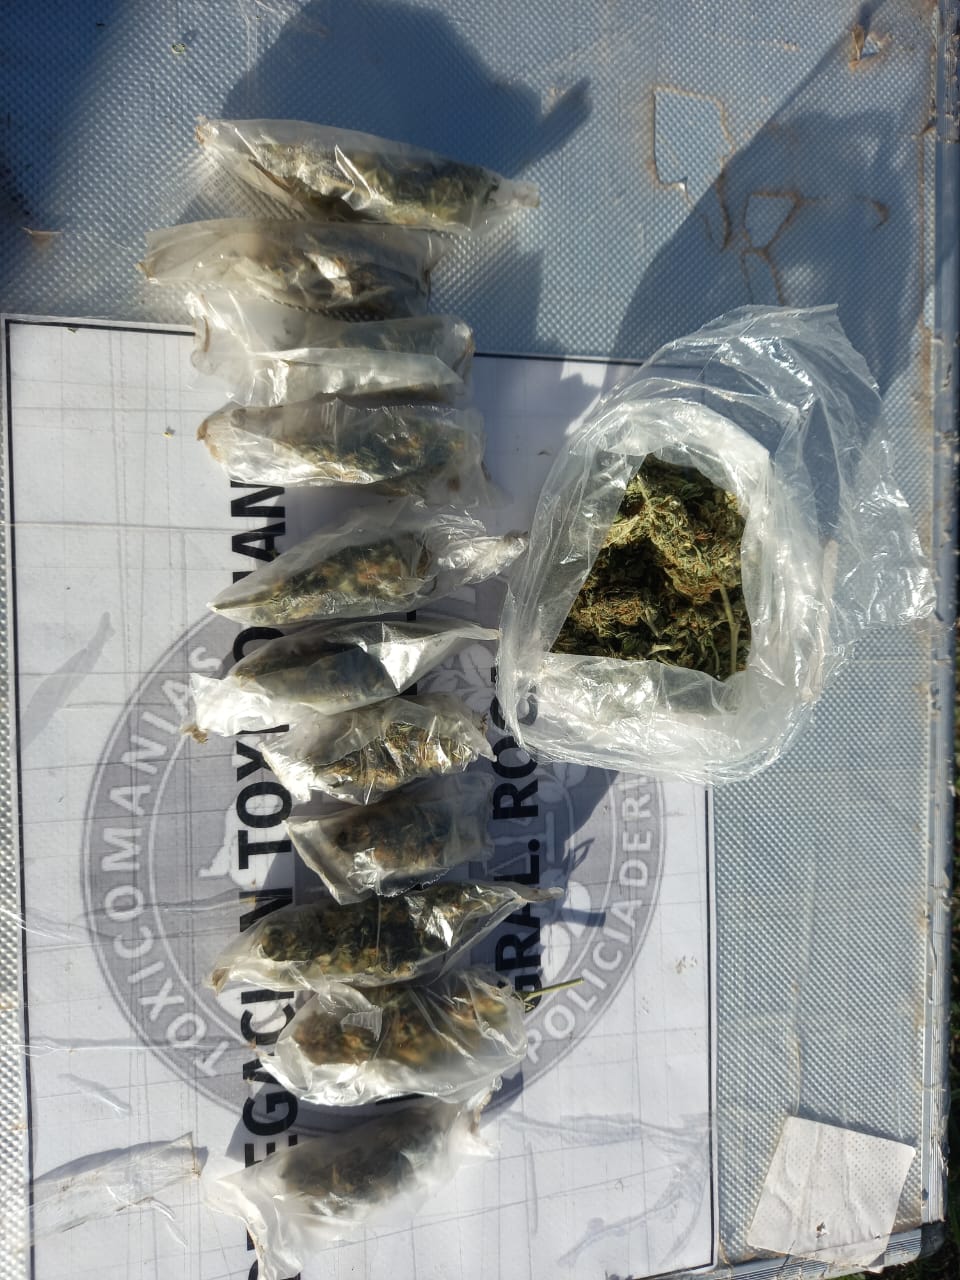 El sujeto transportaba la marihuana en una mochila. foto: gentileza.